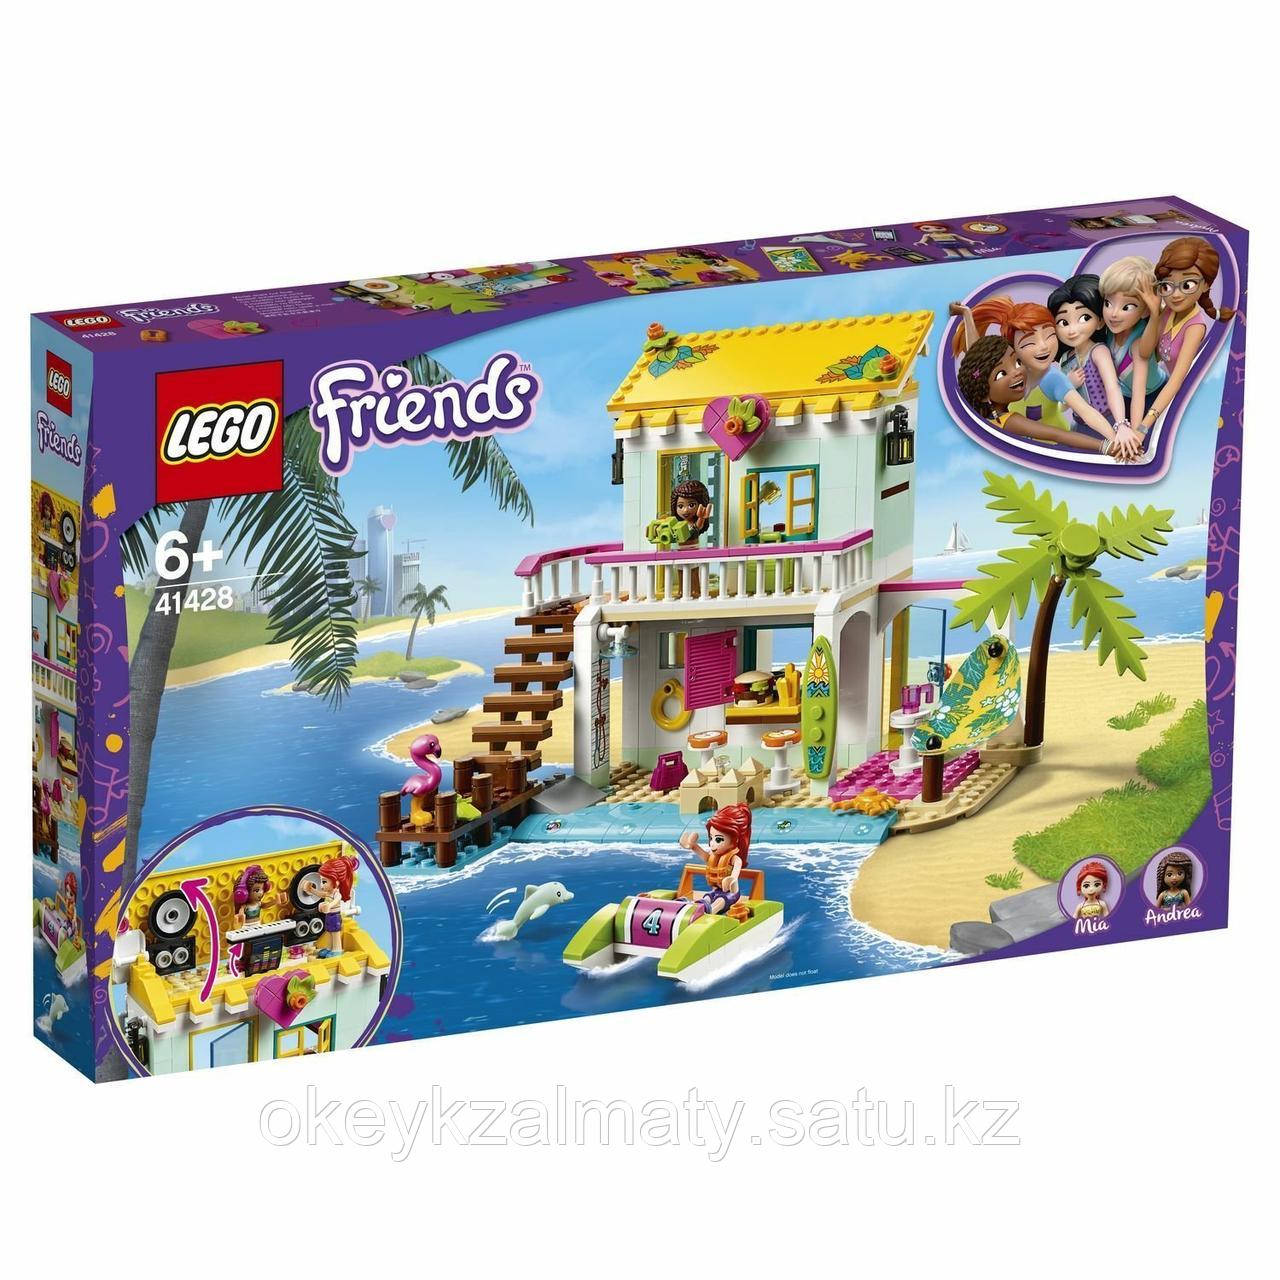 LEGO Friends: Пляжный домик 41428